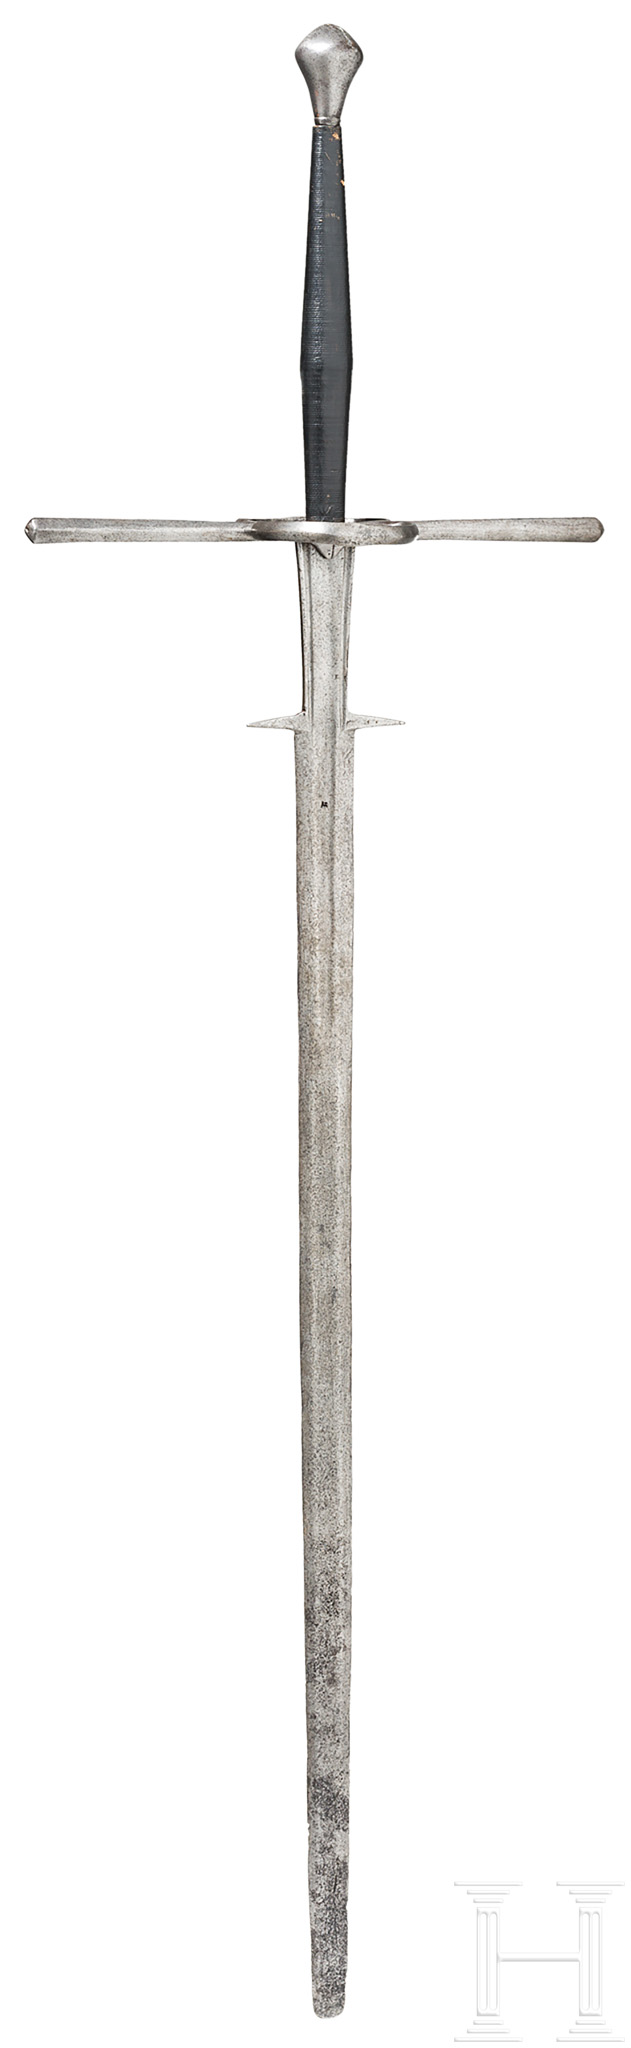 Kampf-Bidenhänder, süddeutsch, um 1530/40Kräftige, zweischneidige Klinge mit leicht gerundeter